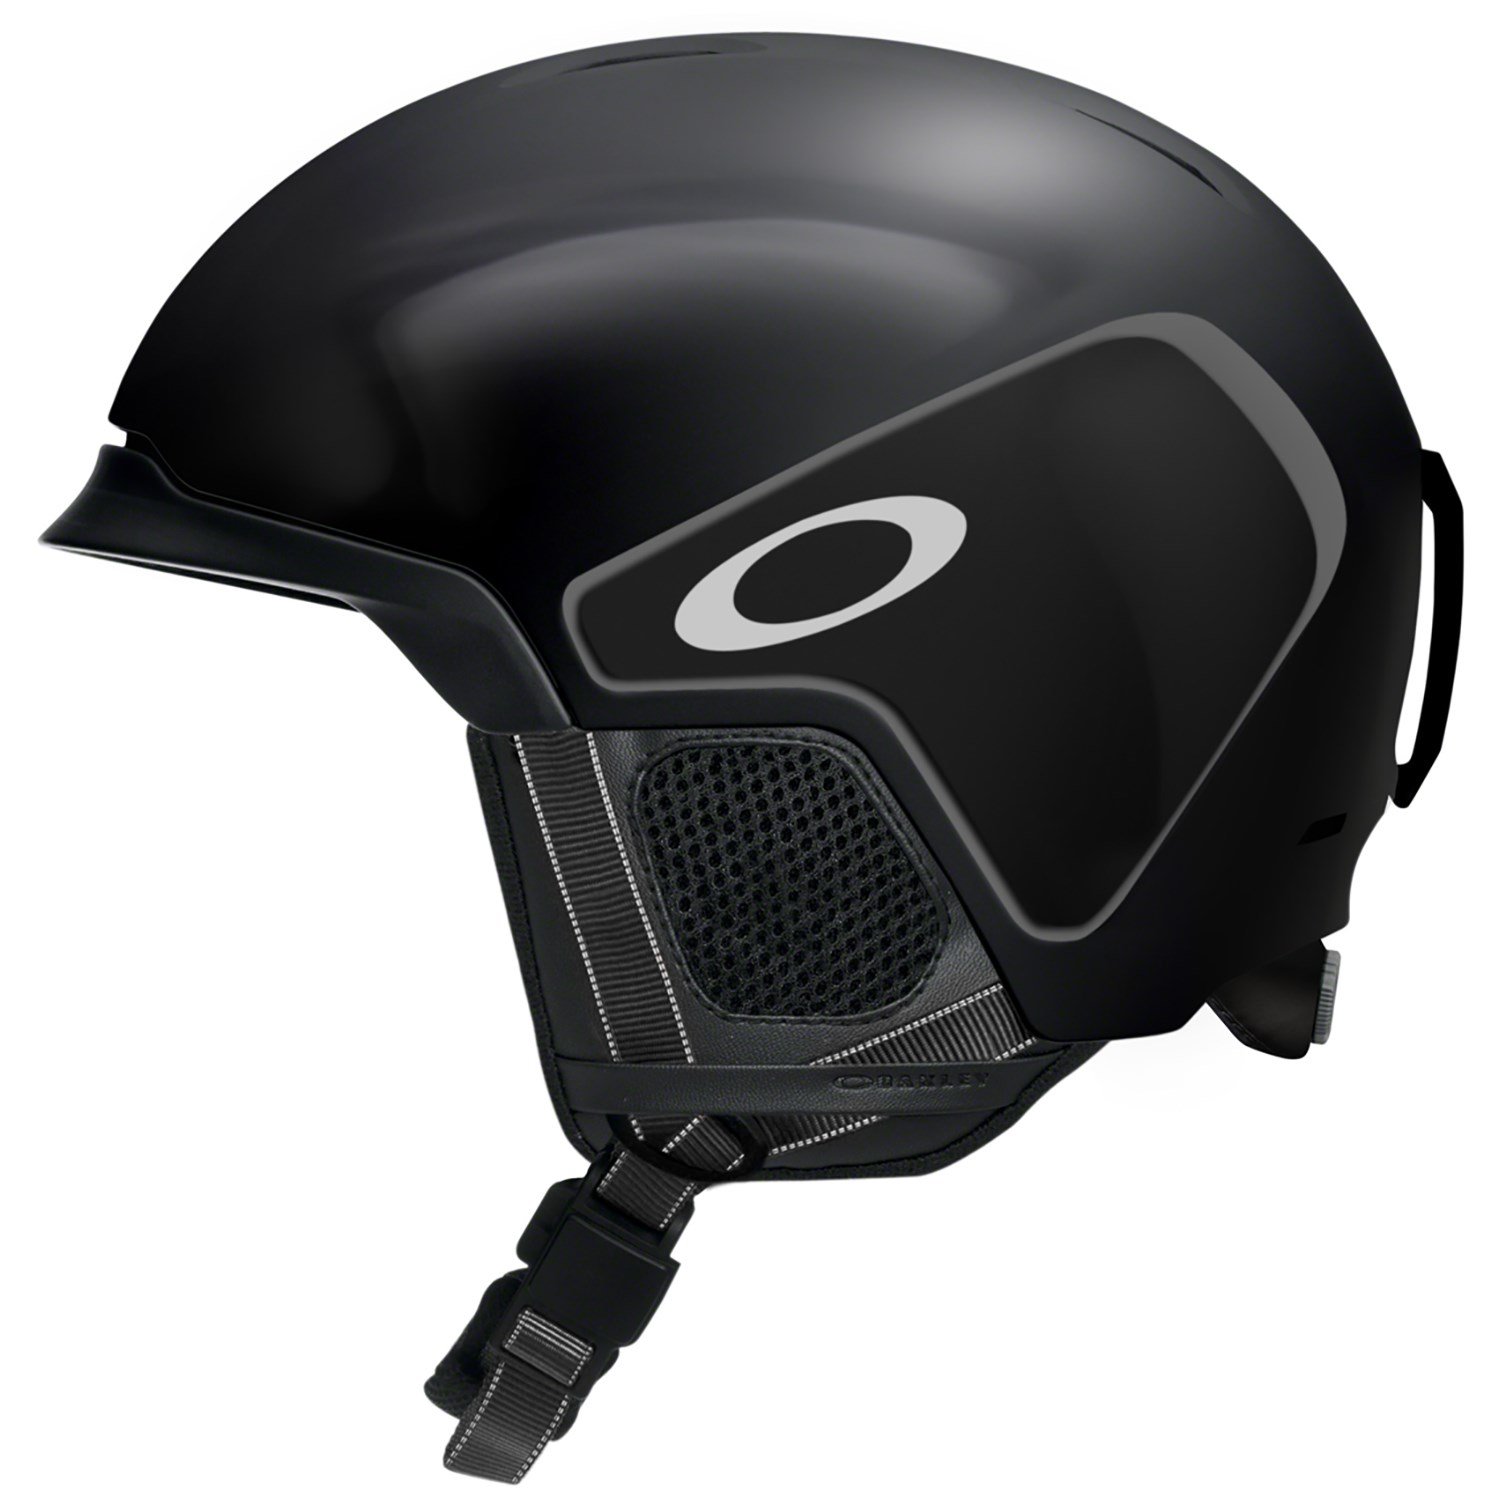 oakley mod3 helmet review